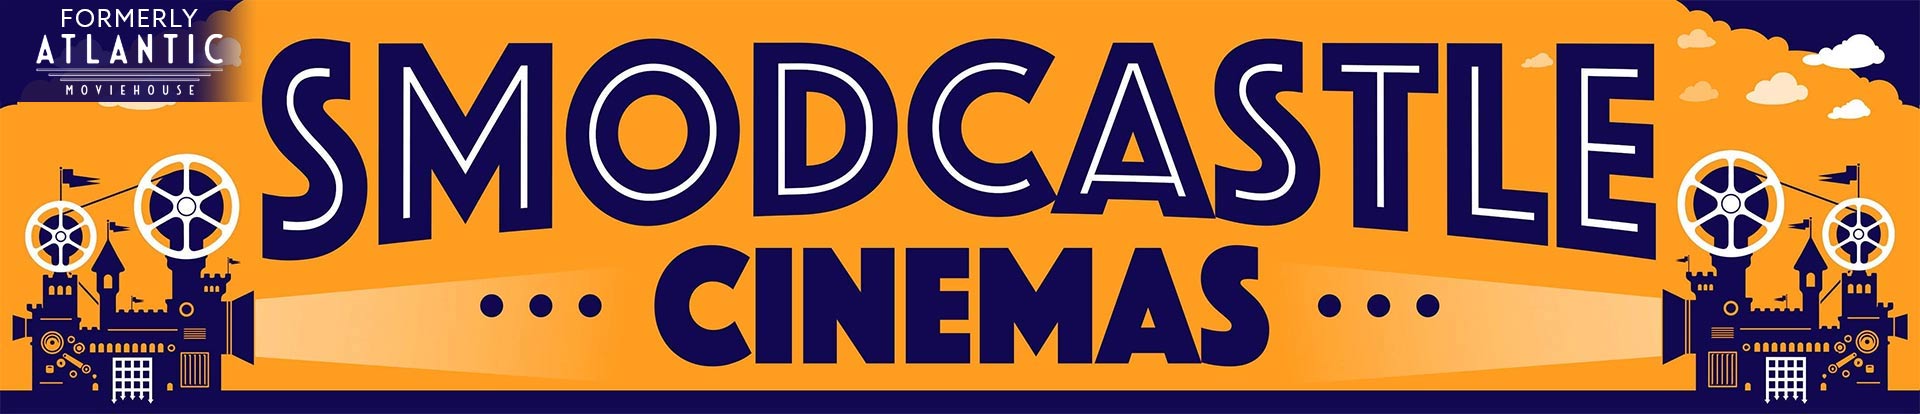 SModcastle Cinemas